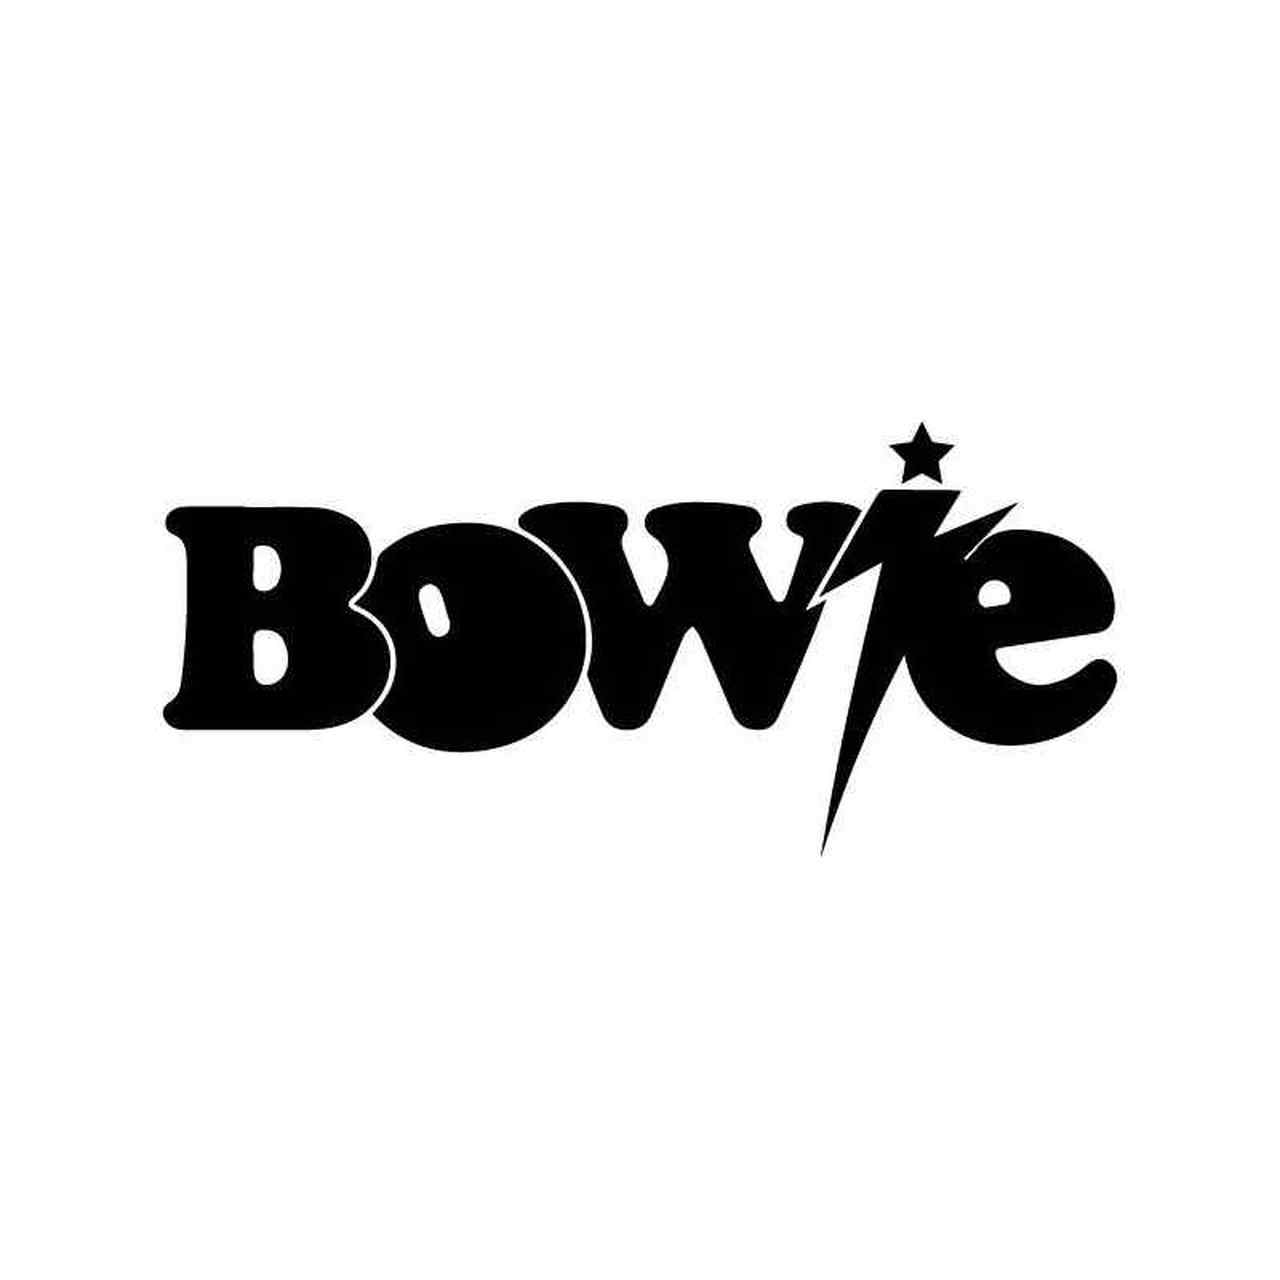 Bowie Logo - David Bowie 2 Vinyl Sticker